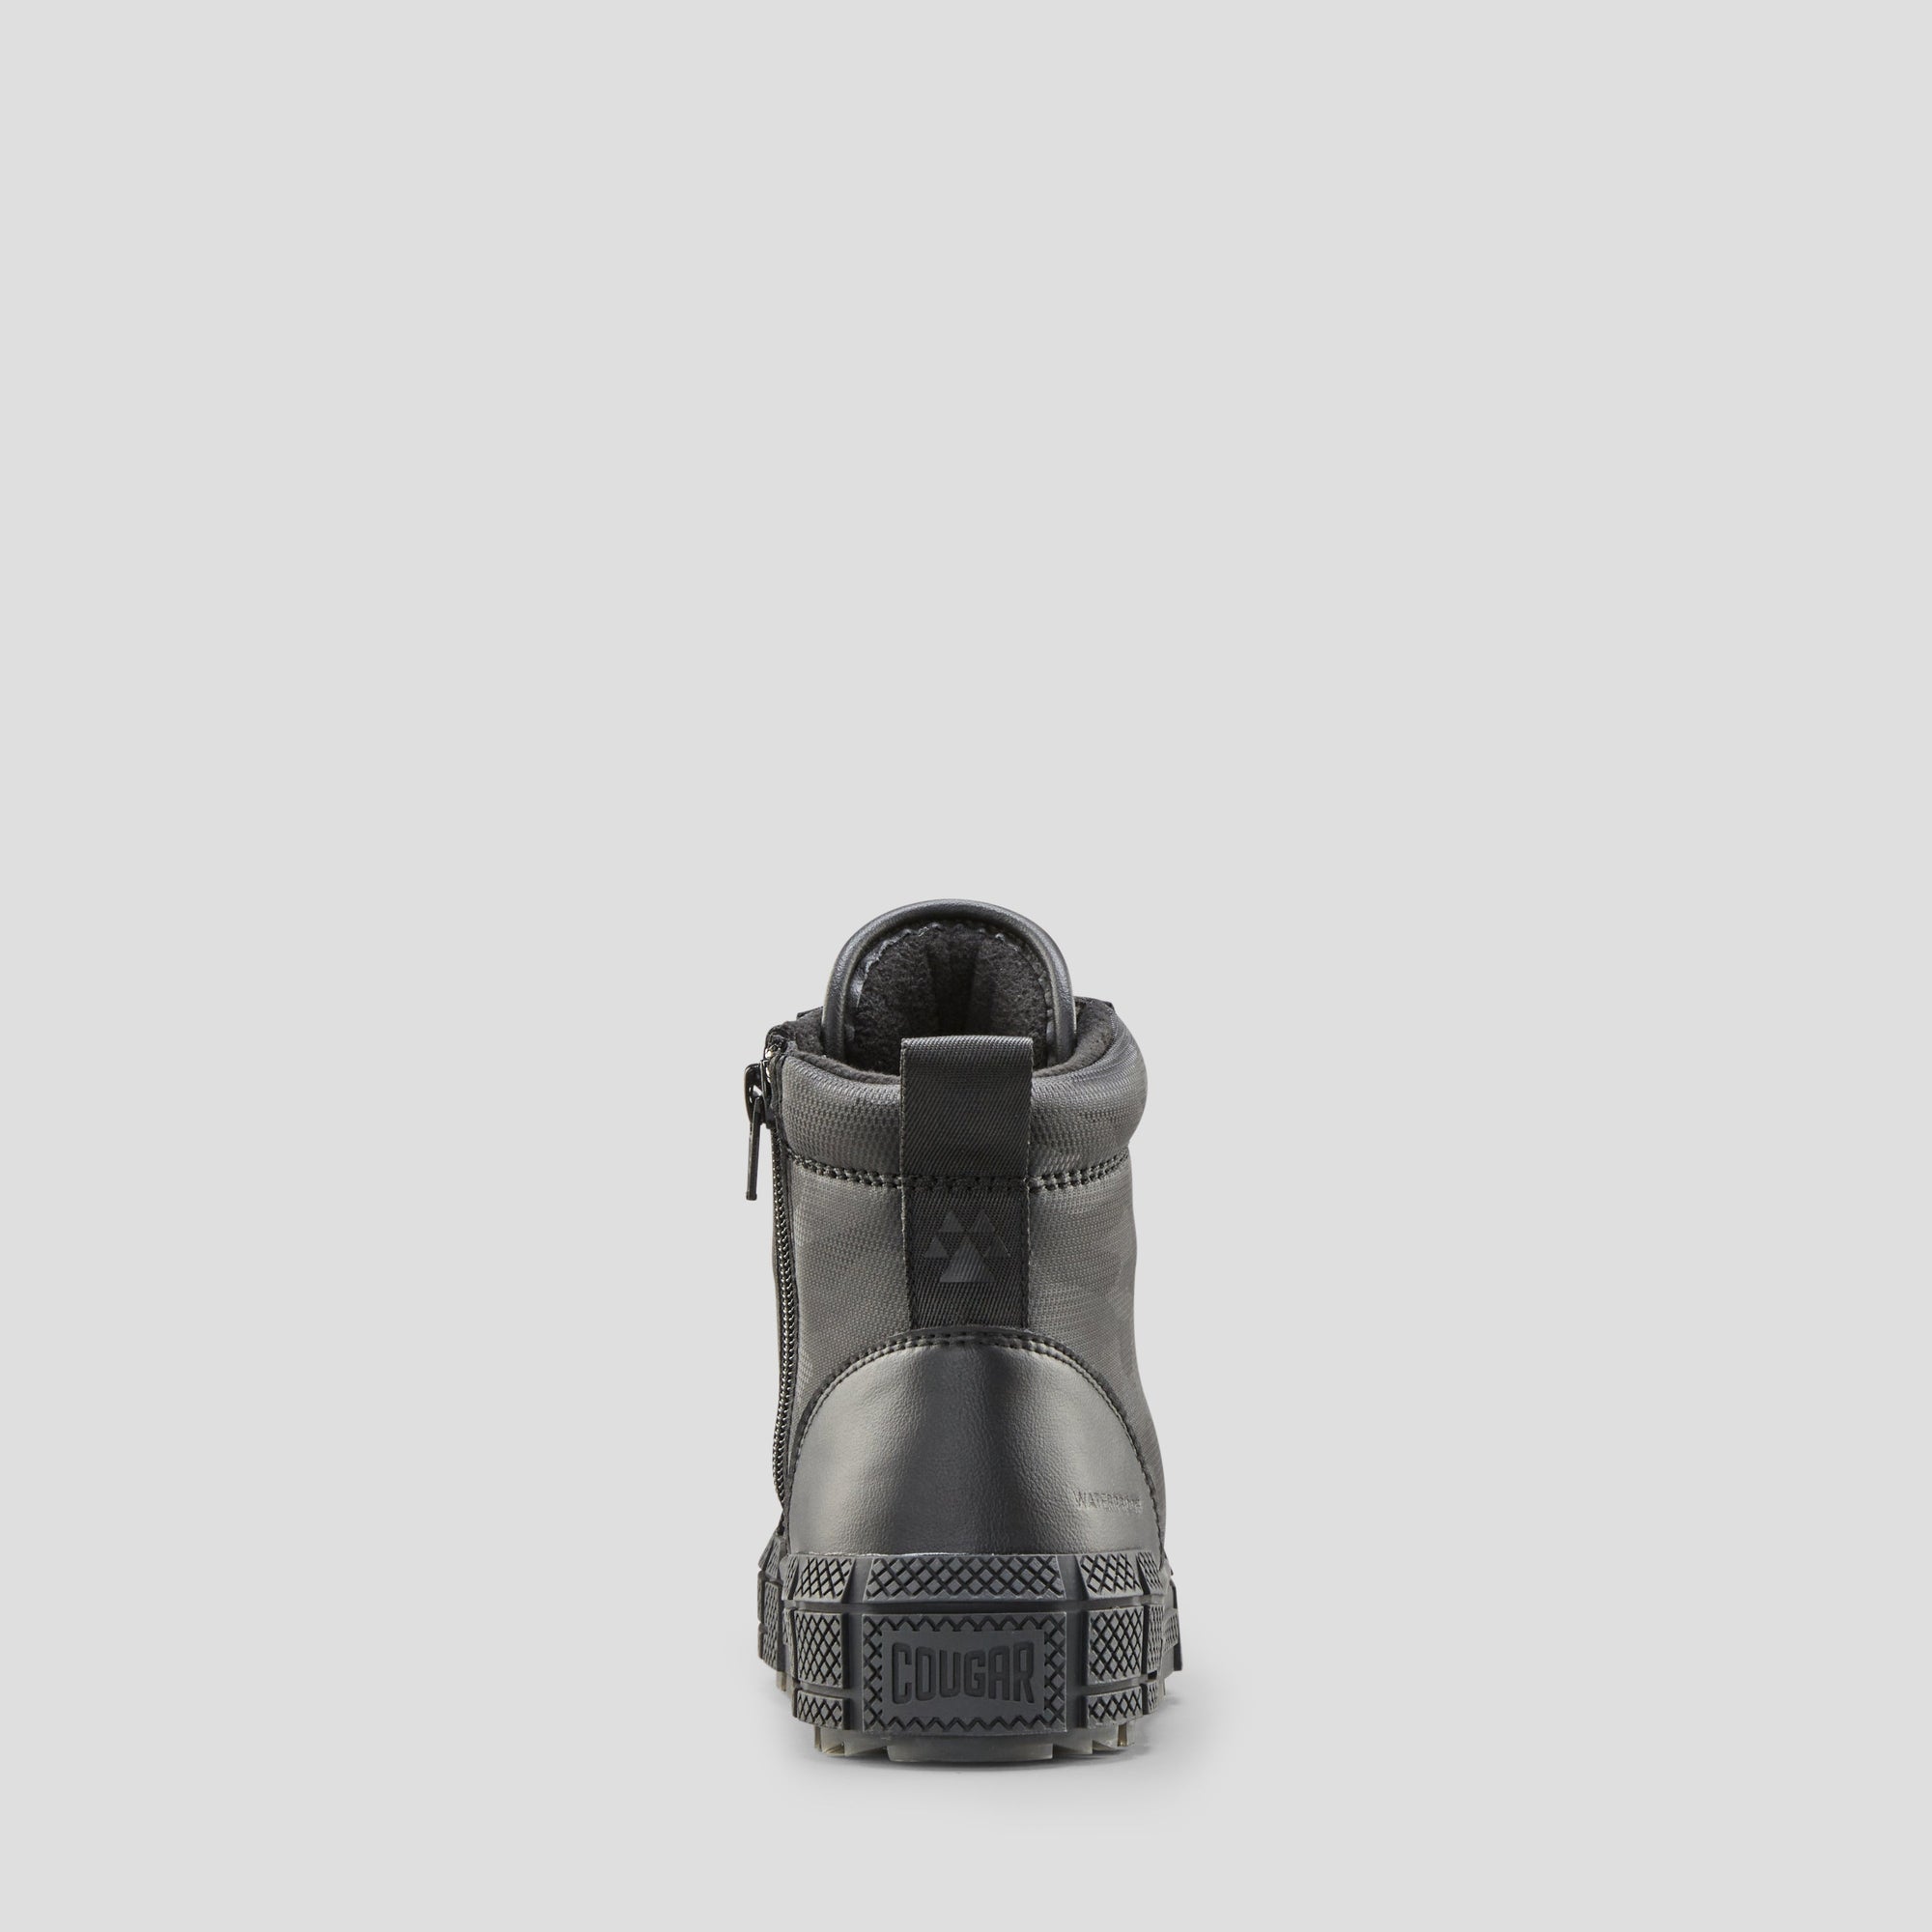 Brave Camo - Bottes d'hiver imperméables en cuir synthétique (Junior) - Colour Black-All-Over